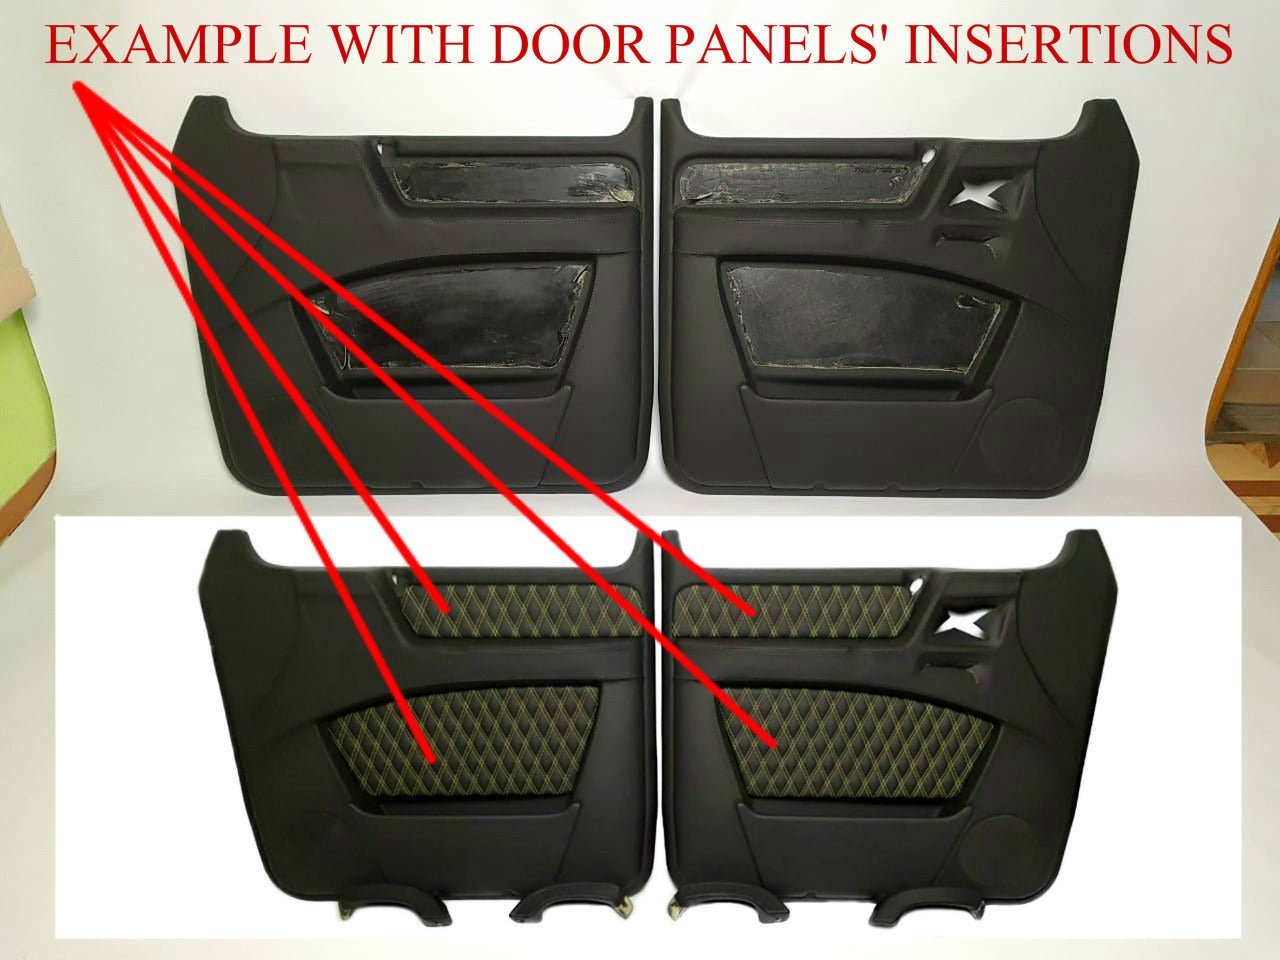 Paneles interiores de puertas sin inserciones de piel para Mercedes-Benz W463 G-Wagon 1979 - 2001